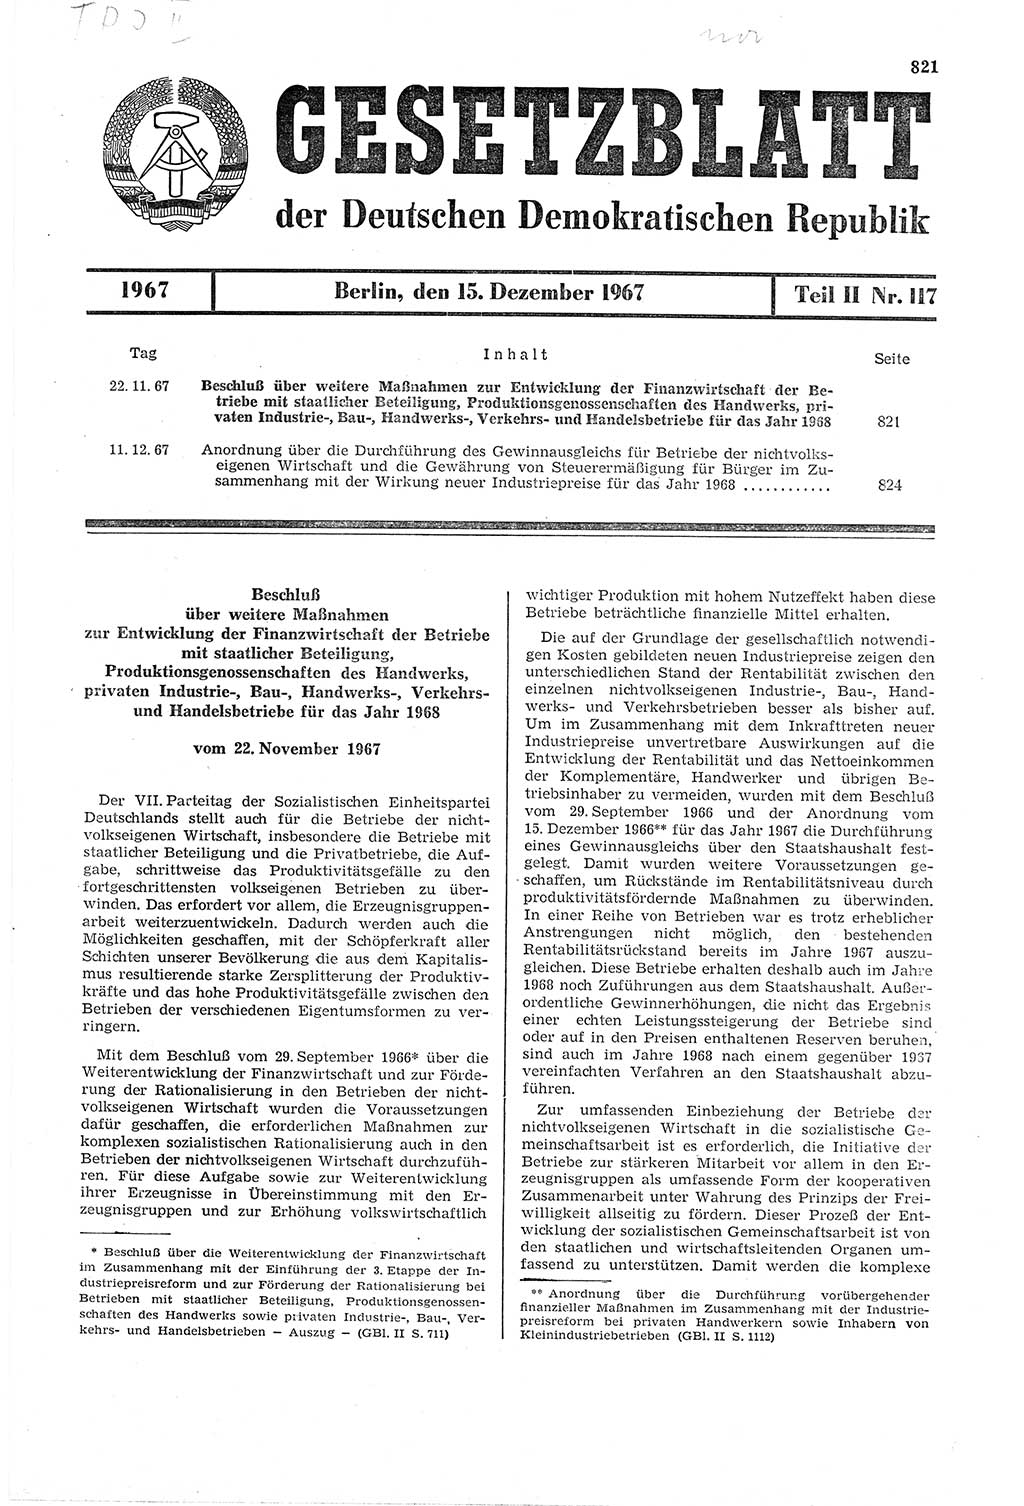 Gesetzblatt (GBl.) der Deutschen Demokratischen Republik (DDR) Teil ⅠⅠ 1967, Seite 821 (GBl. DDR ⅠⅠ 1967, S. 821)